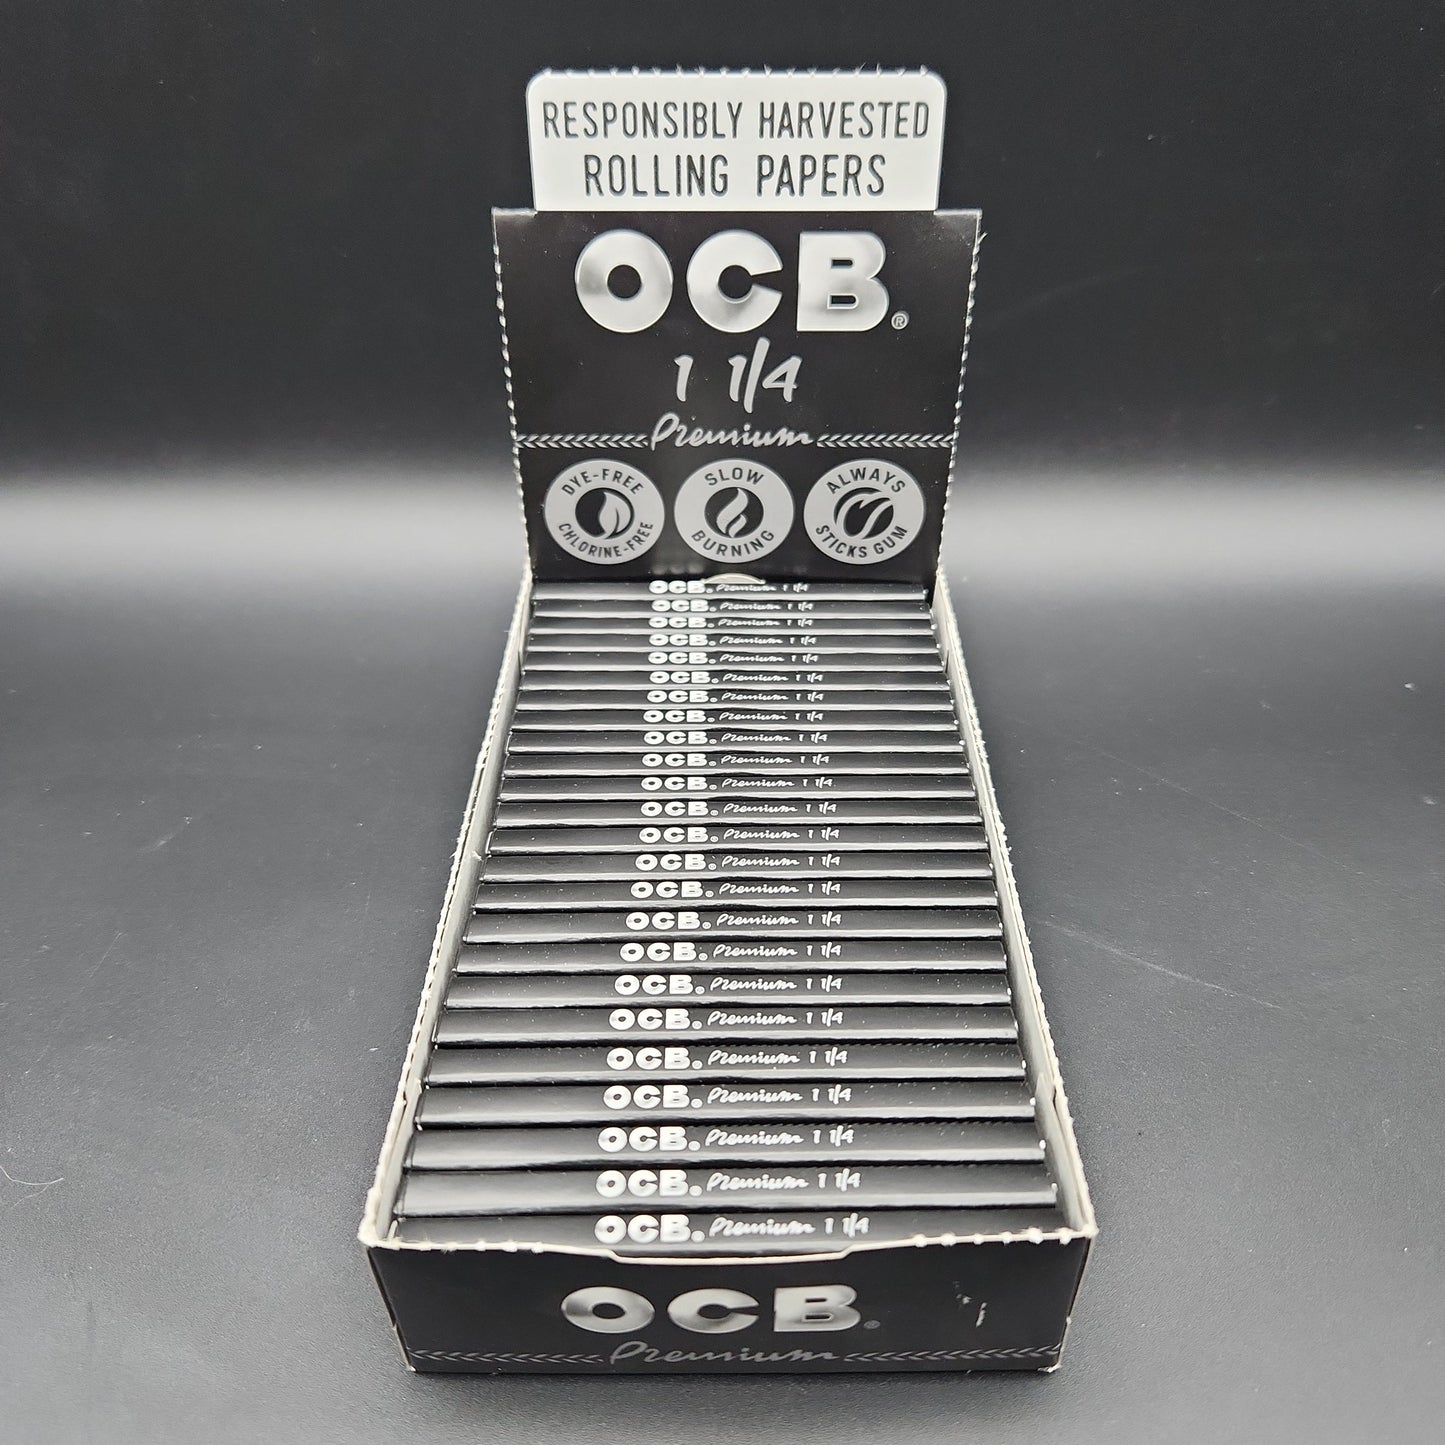 OCB Premium 1 1/4 Rolling Paper - Box of 24